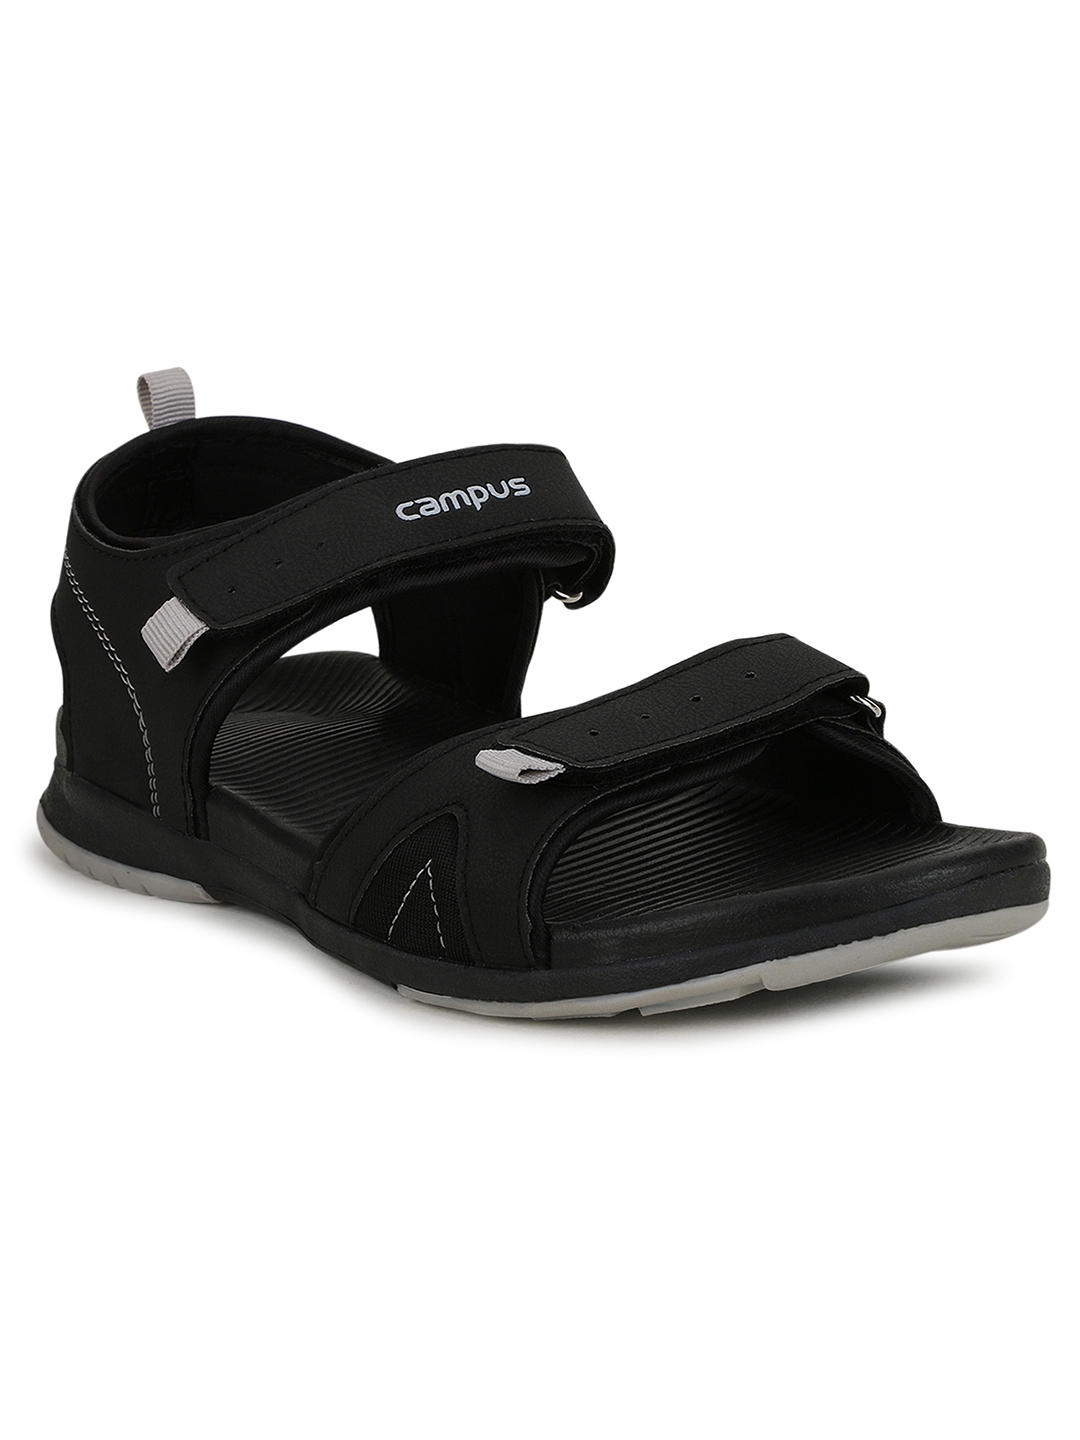 Campus Shoes | Black Sandals